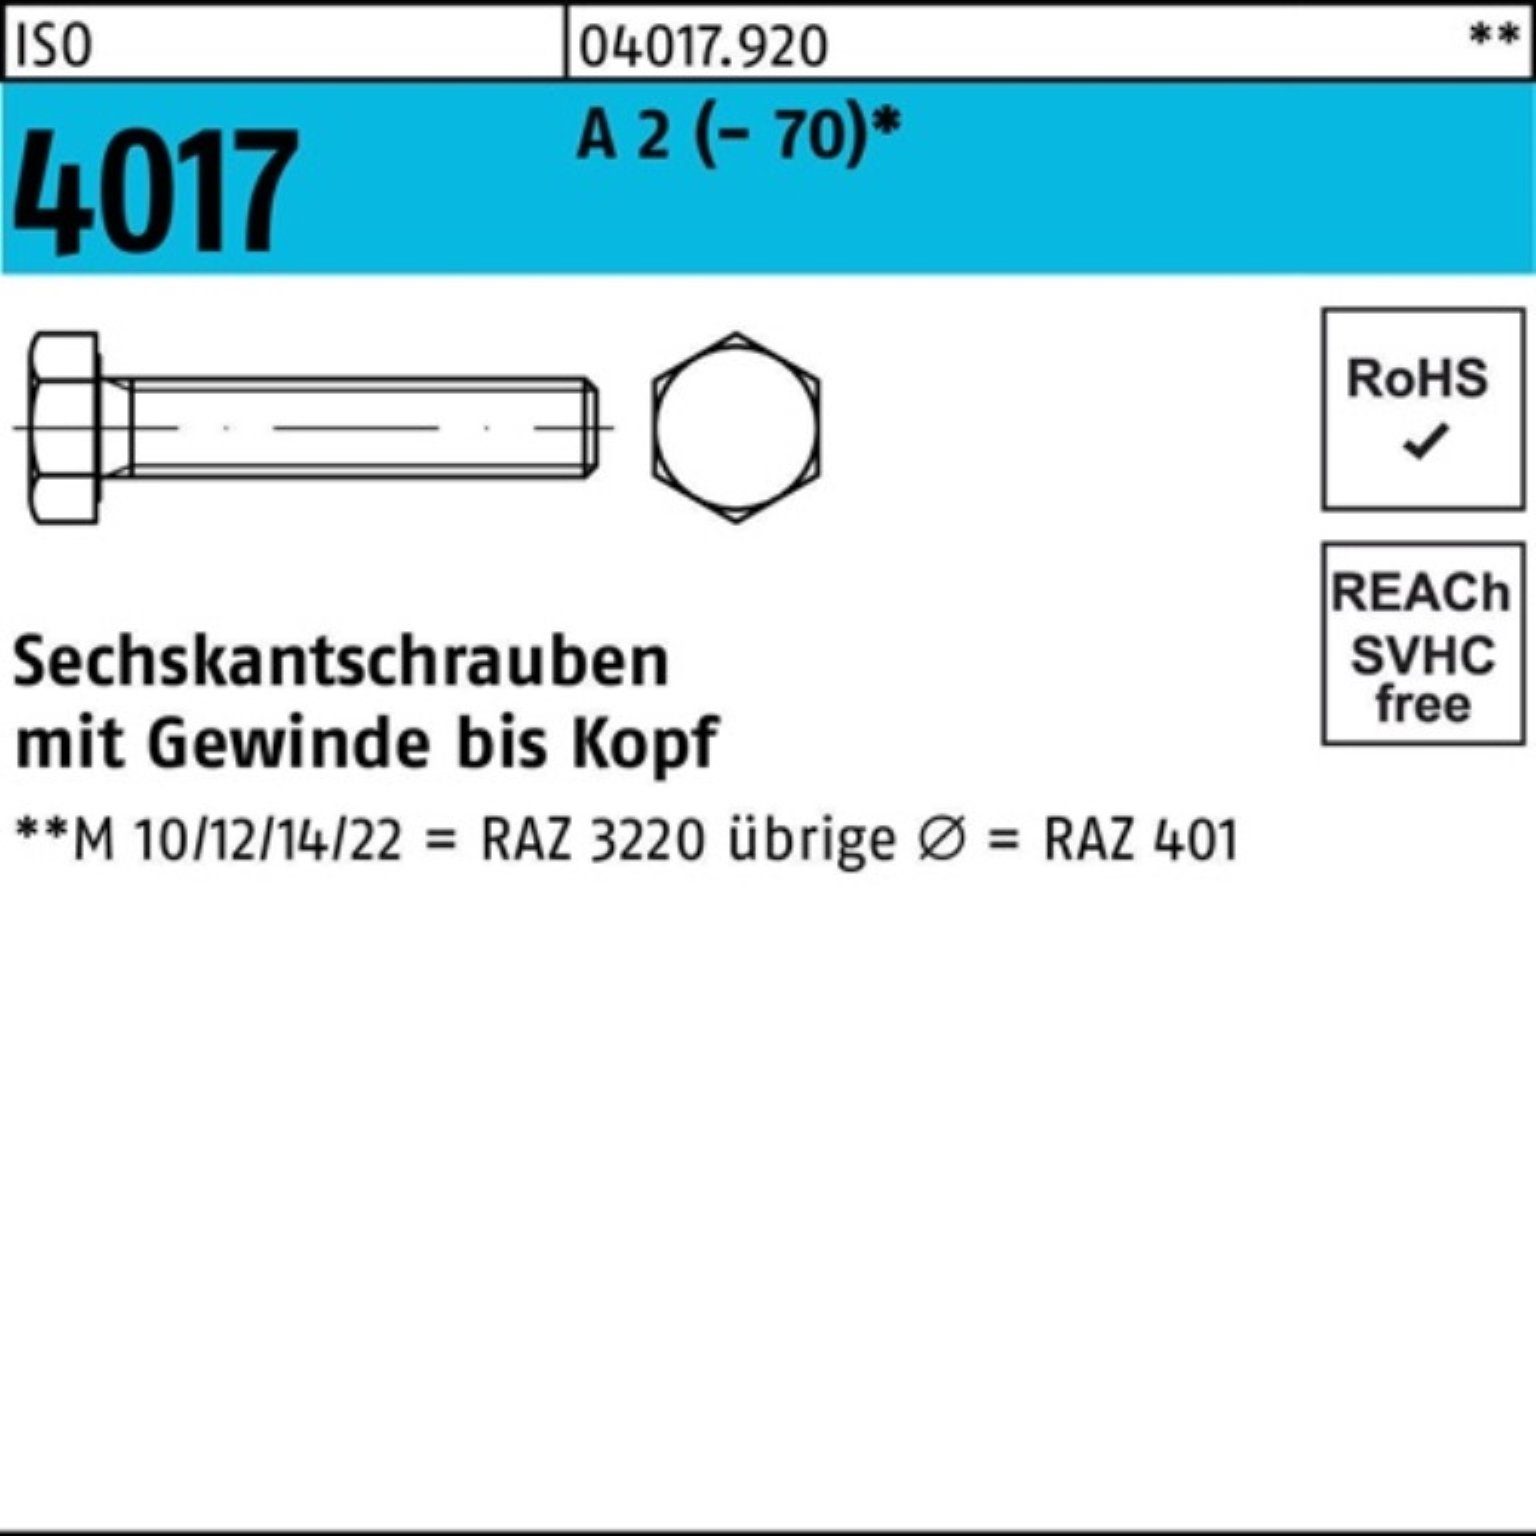 Pack 180 (70) Bufab 100er 2 ISO Stück 1 A VG Sechskantschraube M24x 4017 Sechskantschraube